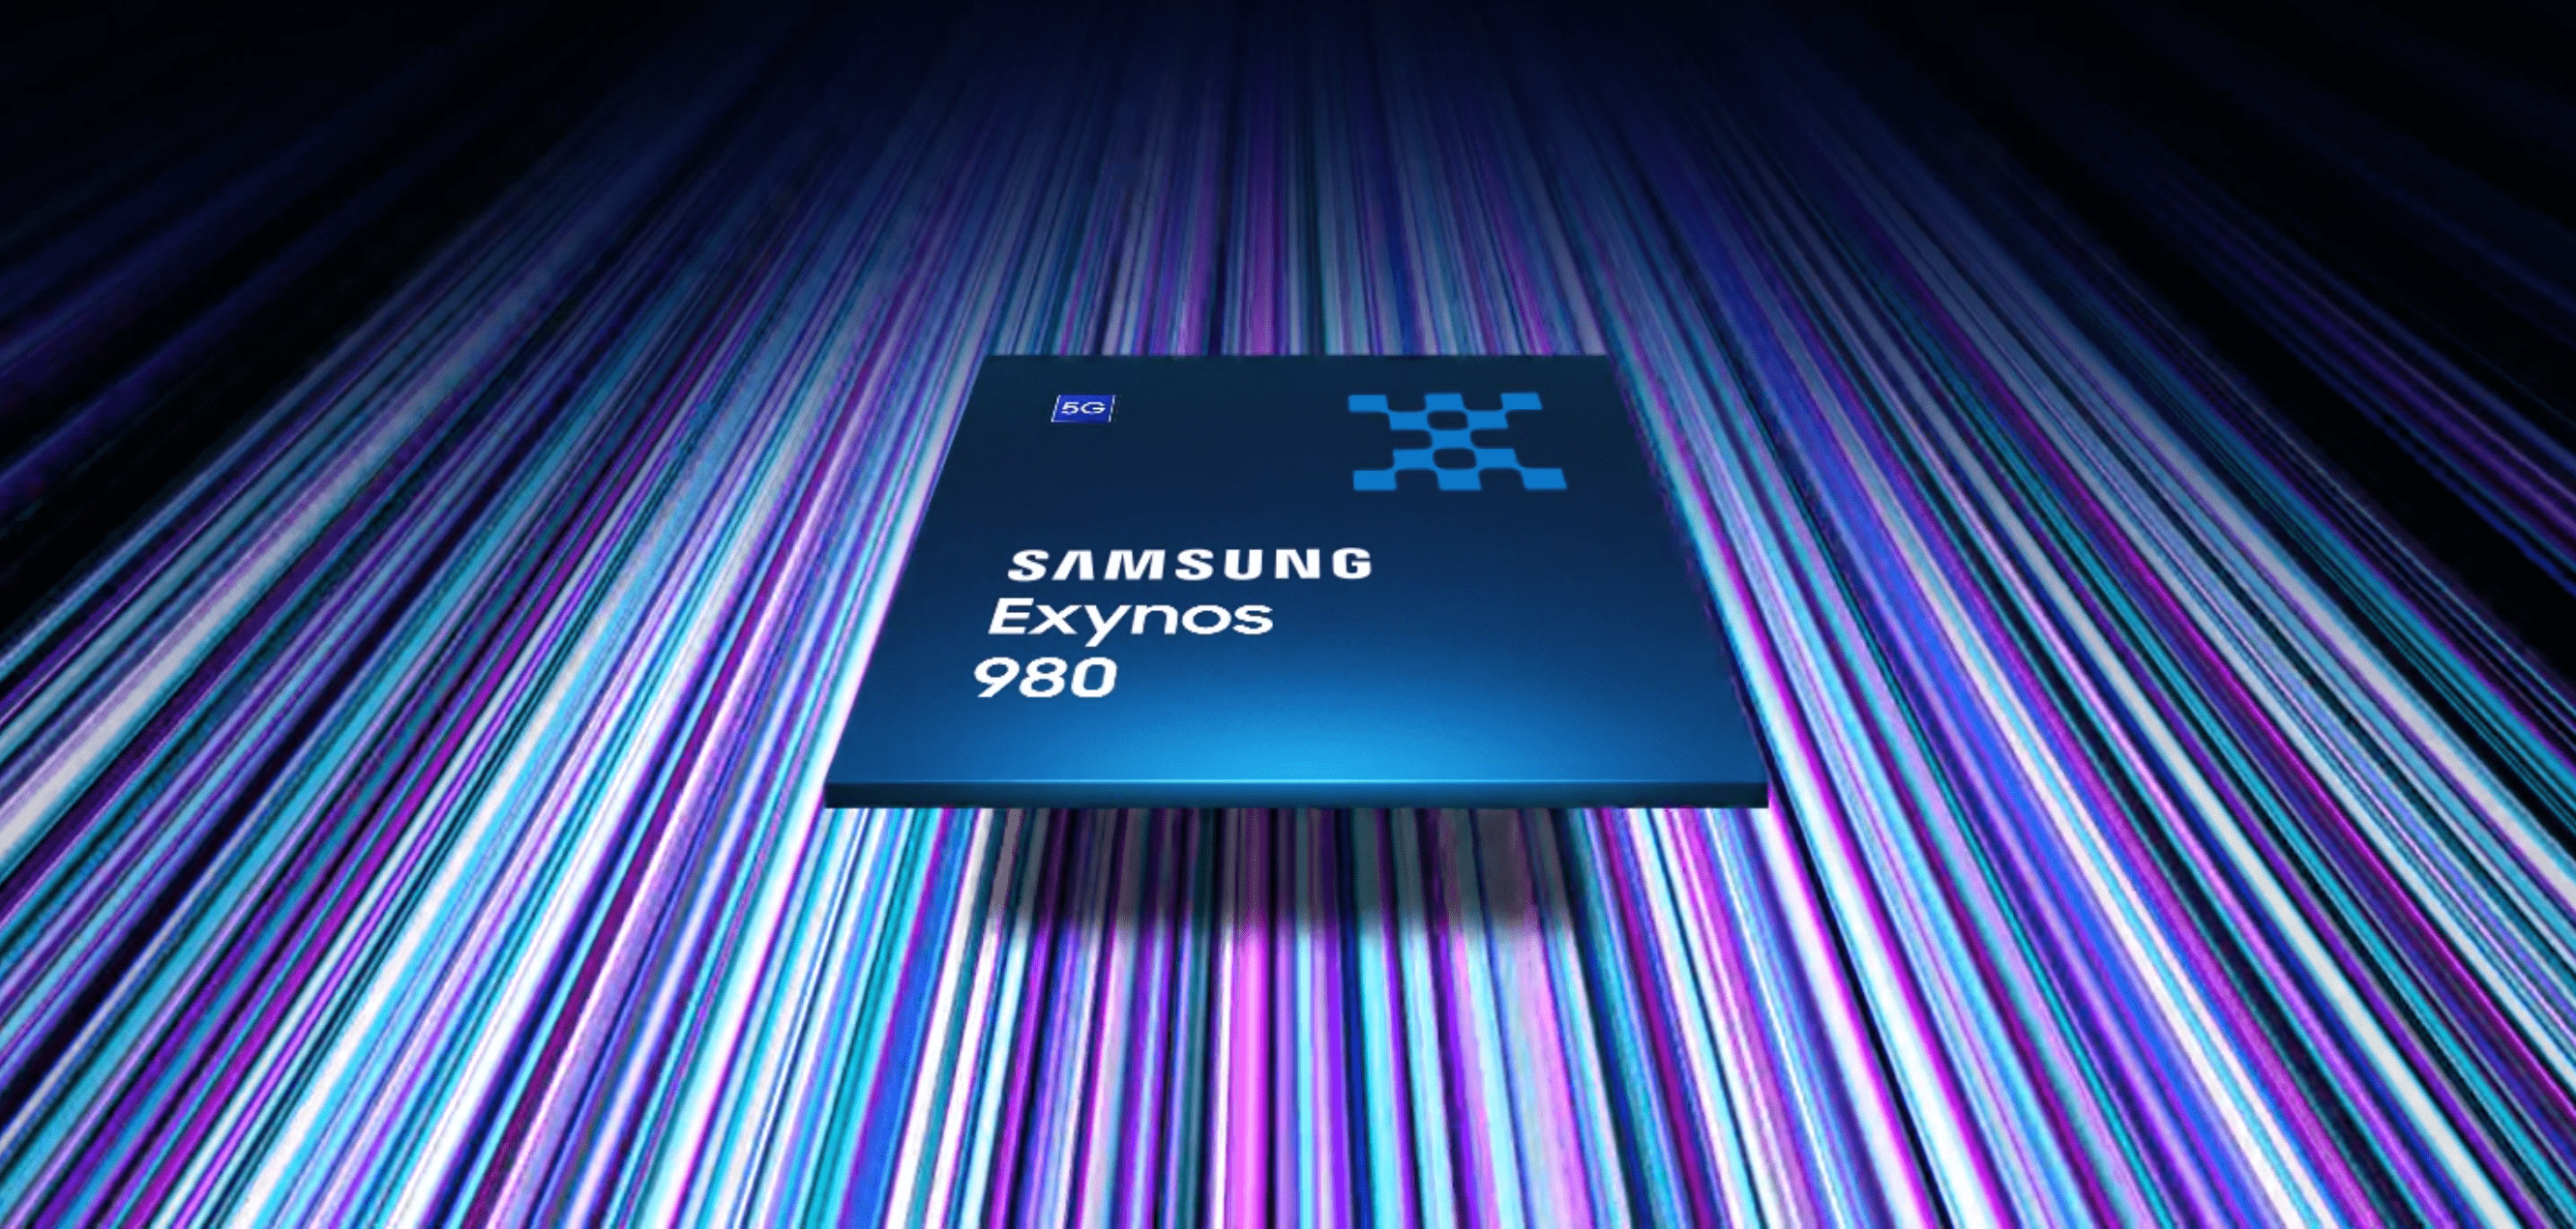 Samsung présente l’Exynos 980 5G, le premier SoC intégrant un modem 5G